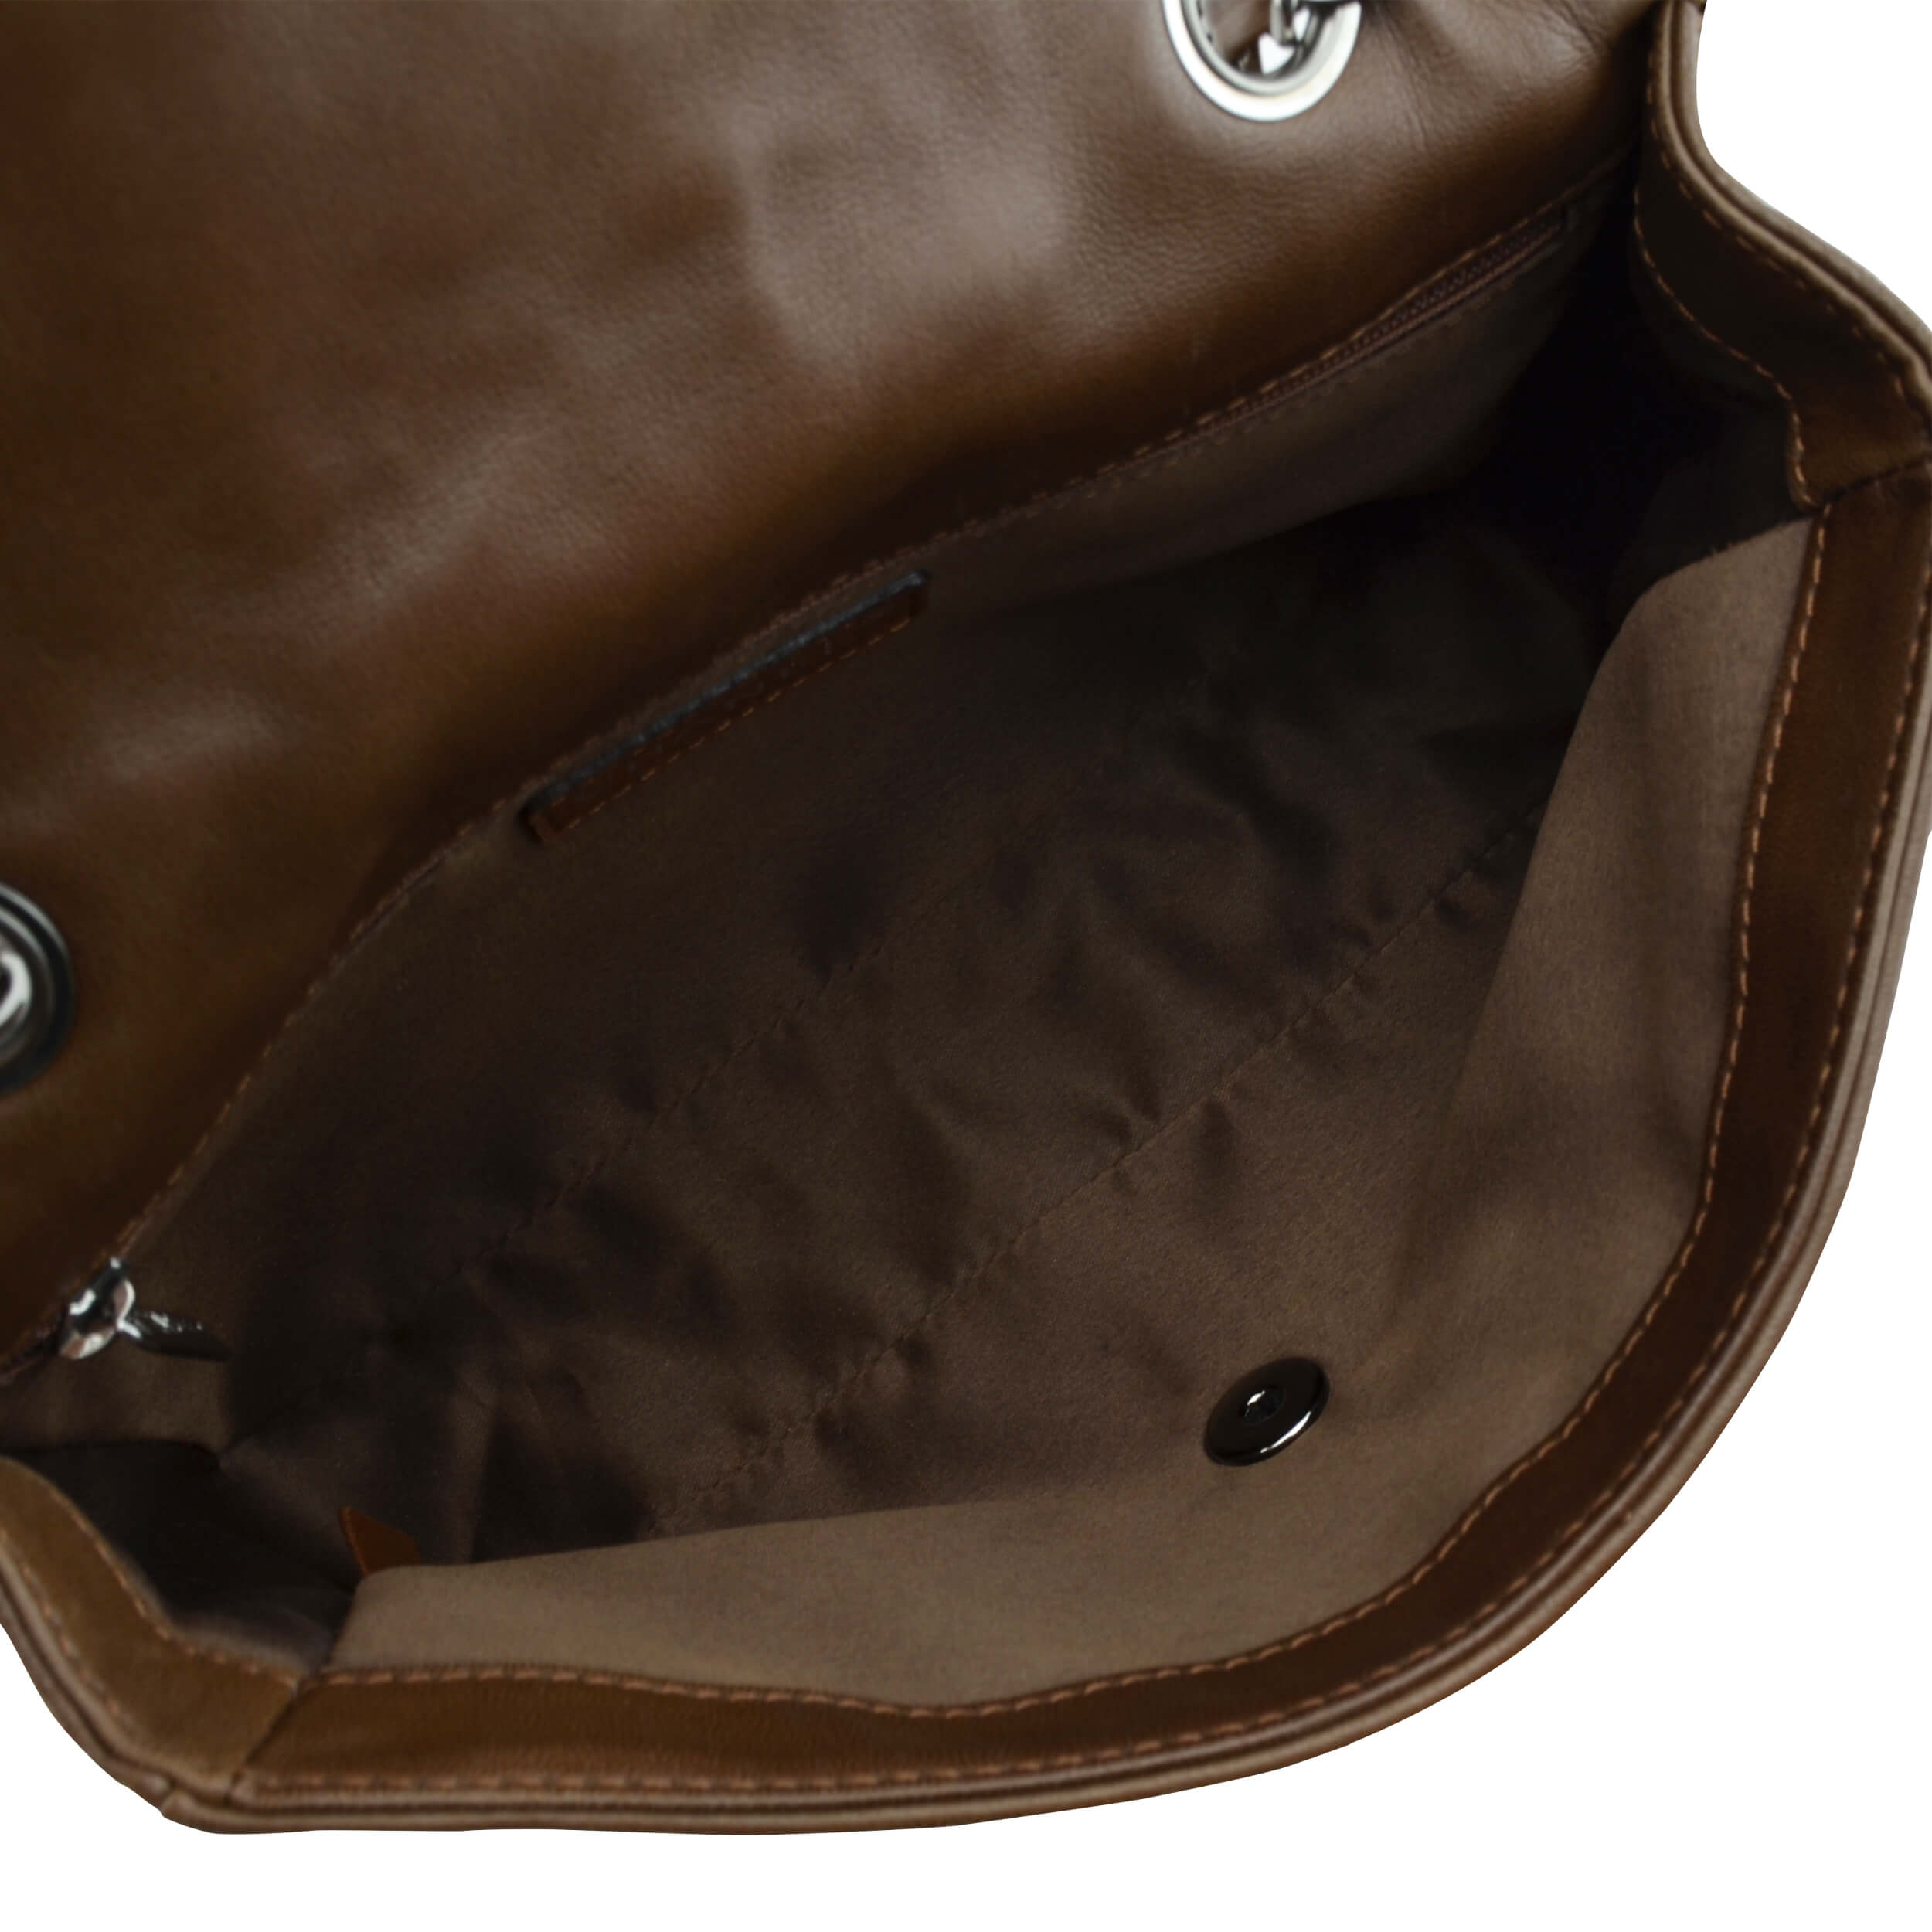 Handtasche CHANEL Quilted Leather/Tweed Patchwork Medium Flap Bag gebraucht 7